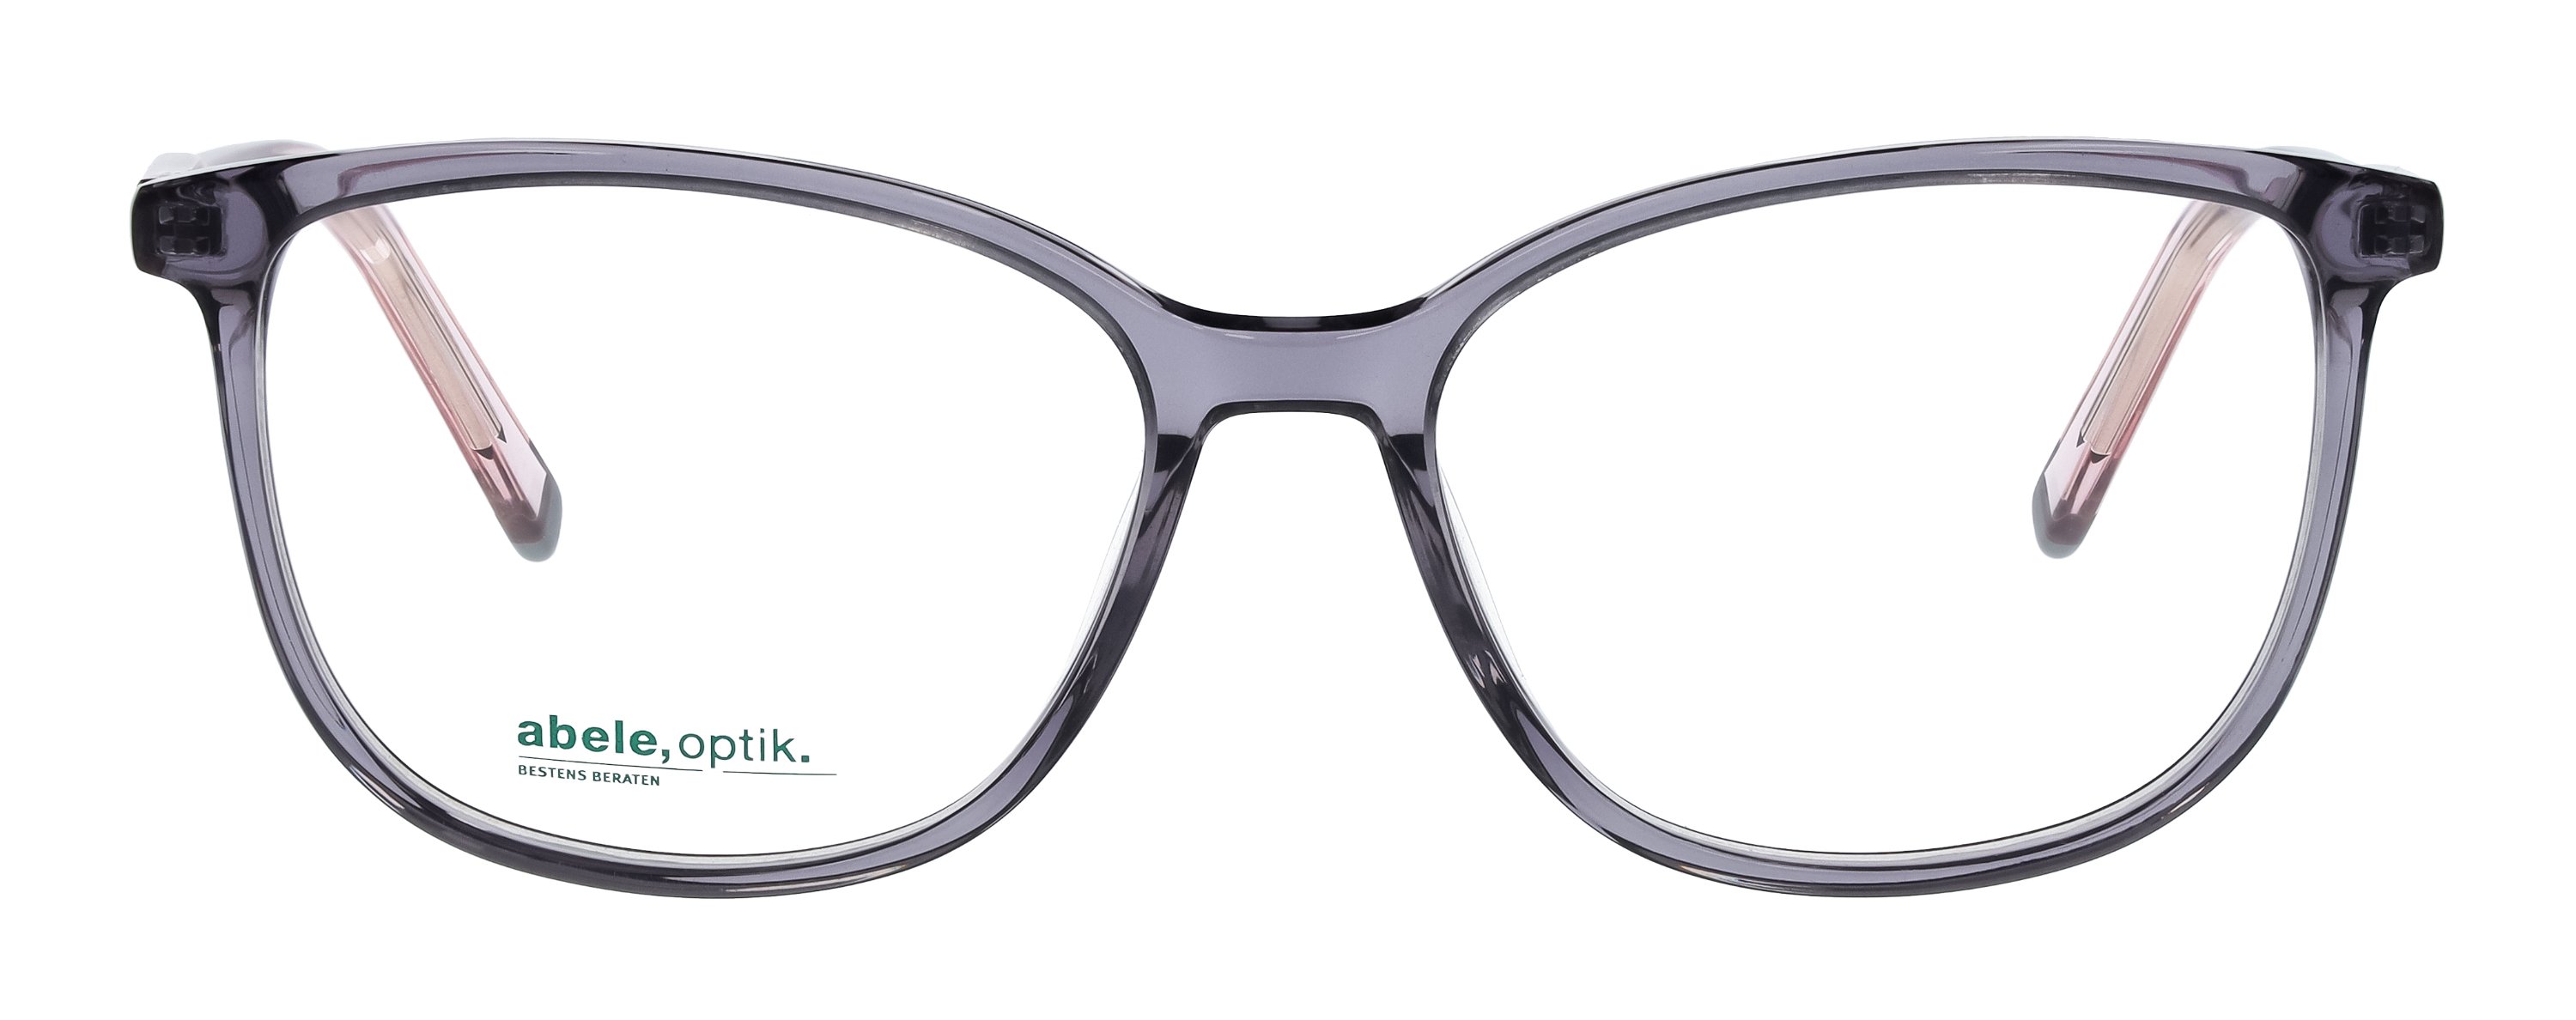 Das Bild zeigt die Korrektionsbrille 148071 von der Marke Abele Optik in grau-lila transparent.